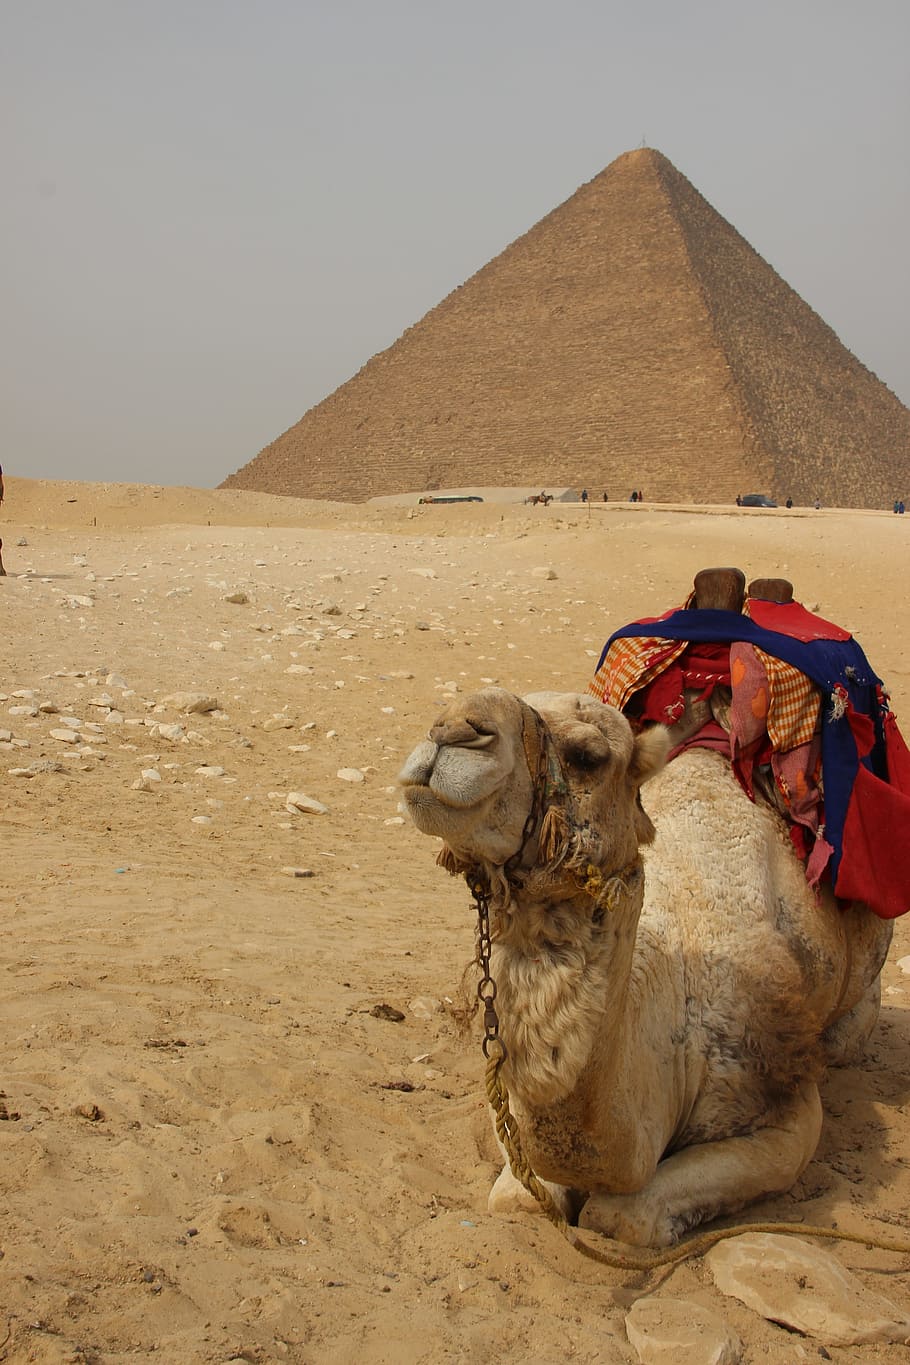 marrom, camelo, deitado, areia, Egito, África, pirâmide, viajando, deserto, saara Deserto